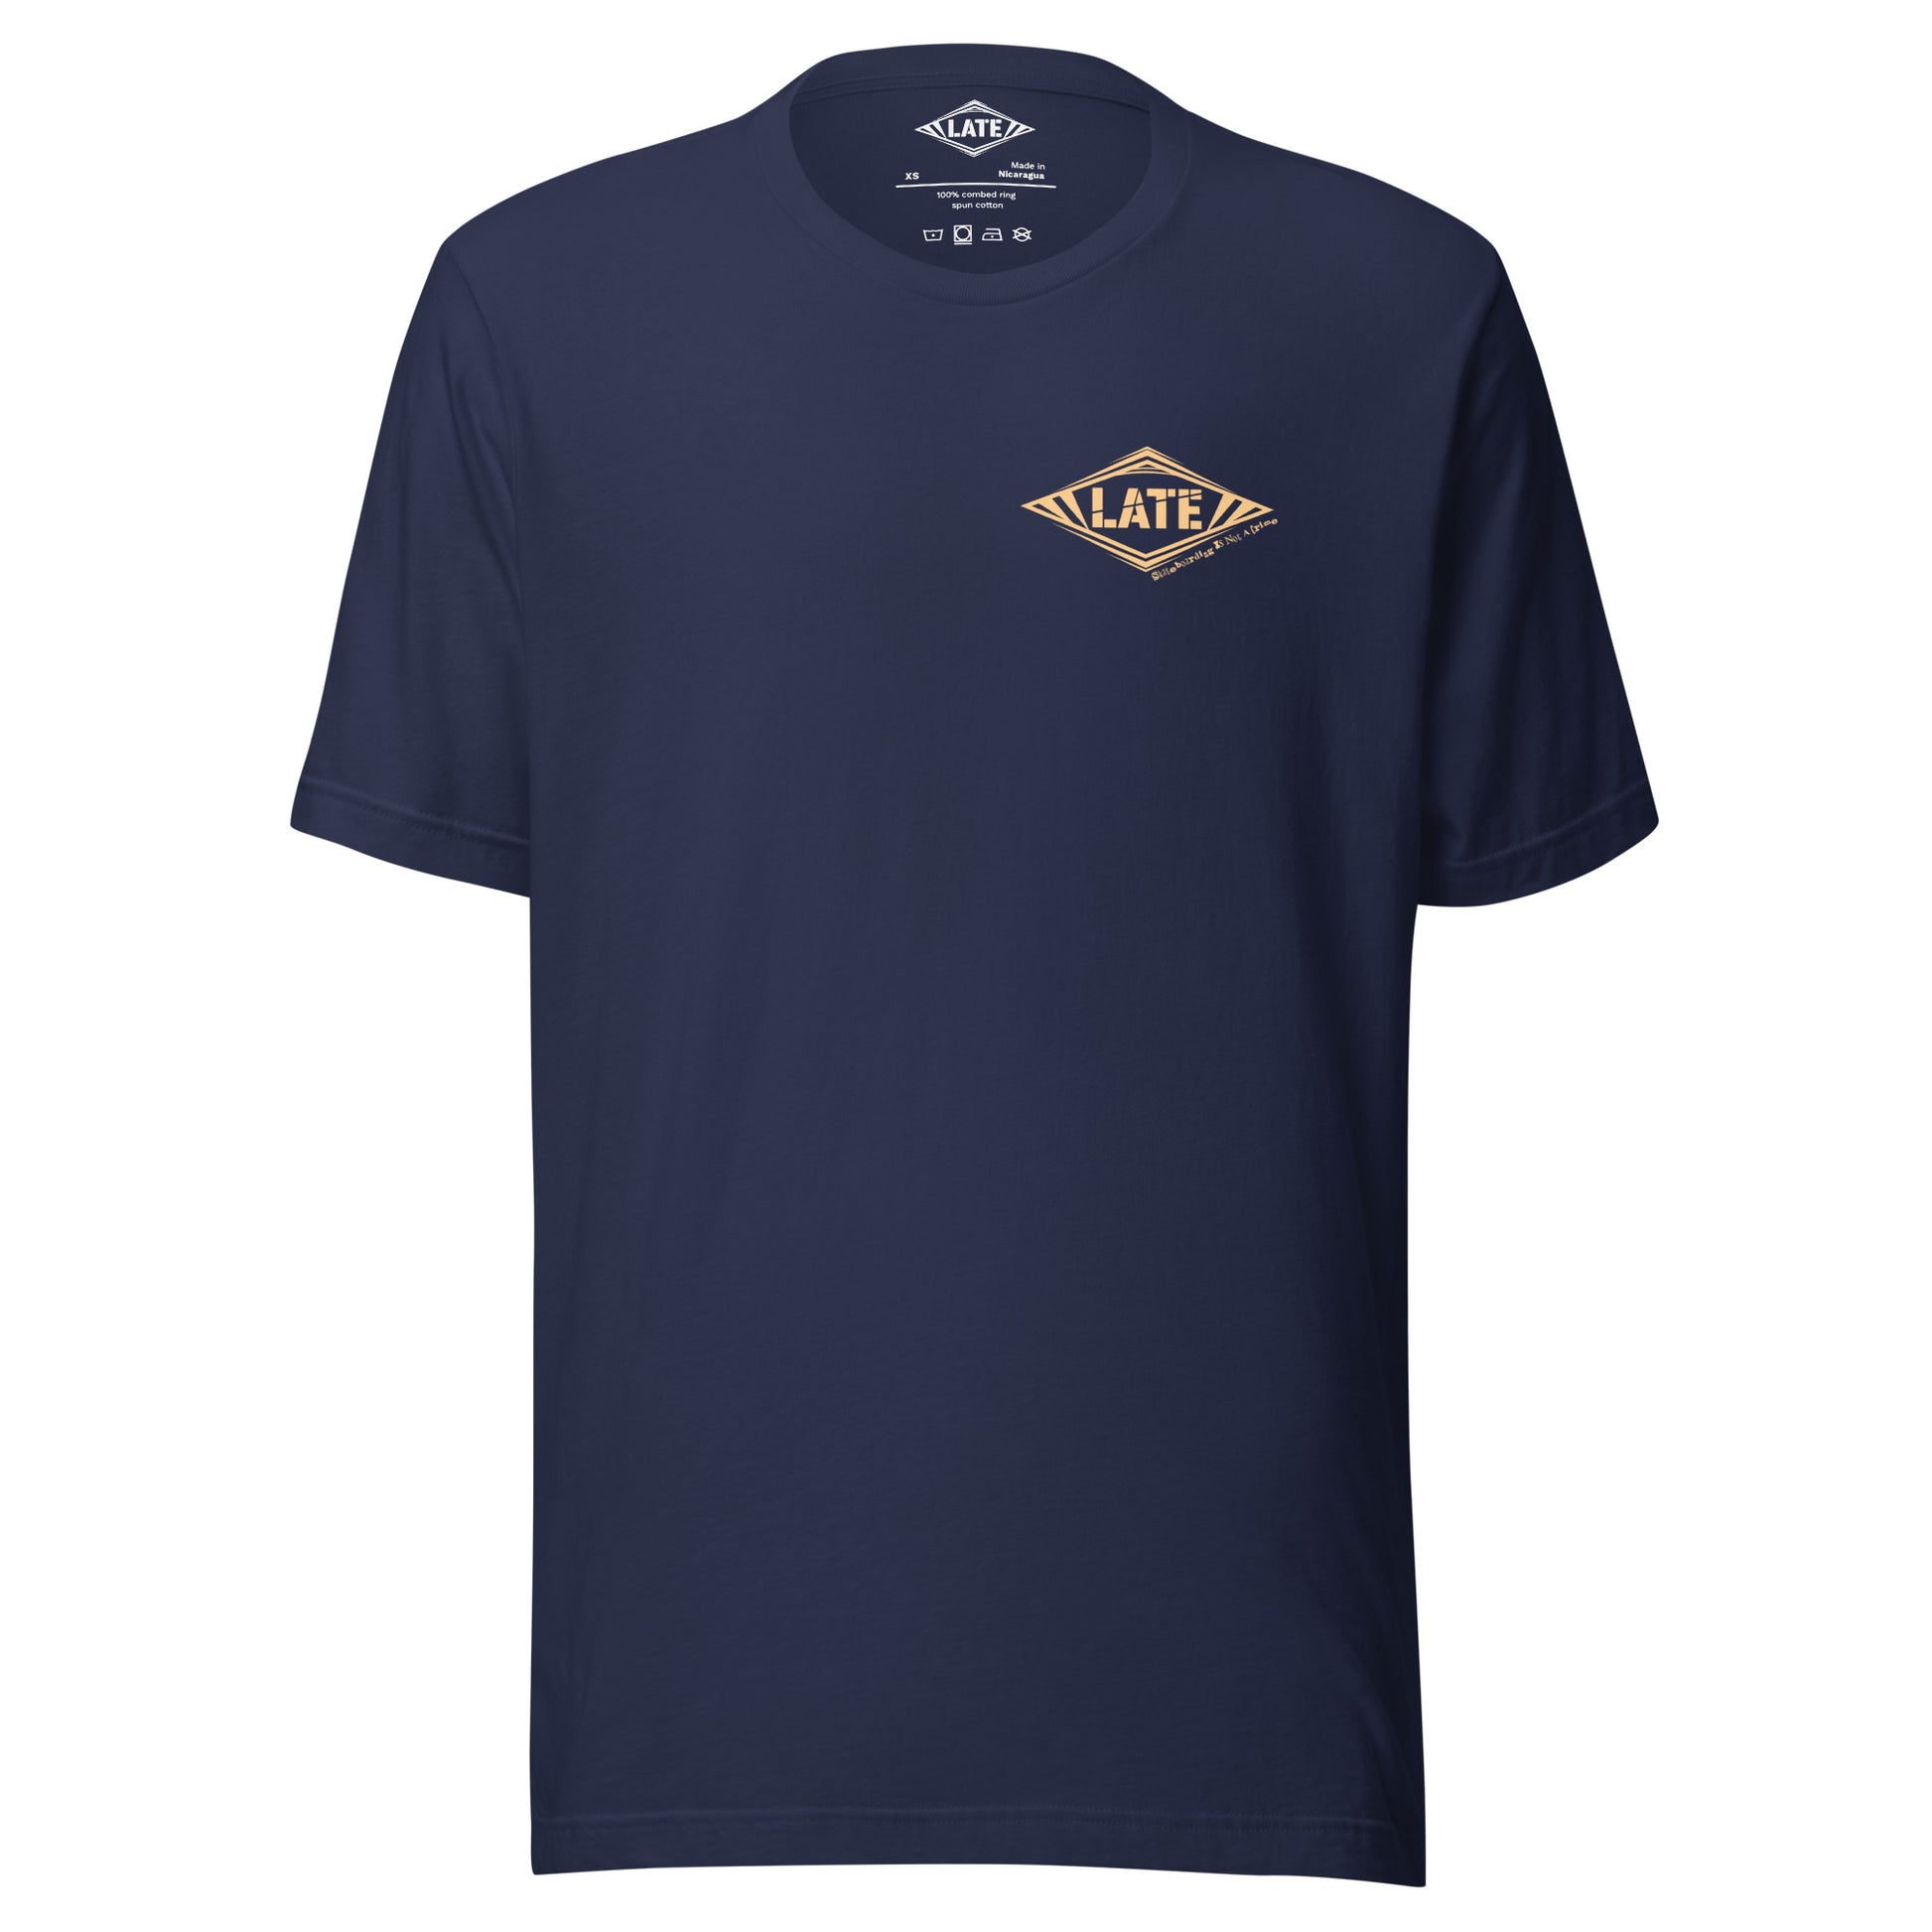 T-Shirt Skateboarding Is Not A Crime unisex Logo marque de vêtement Late Tshirt face couleur navy